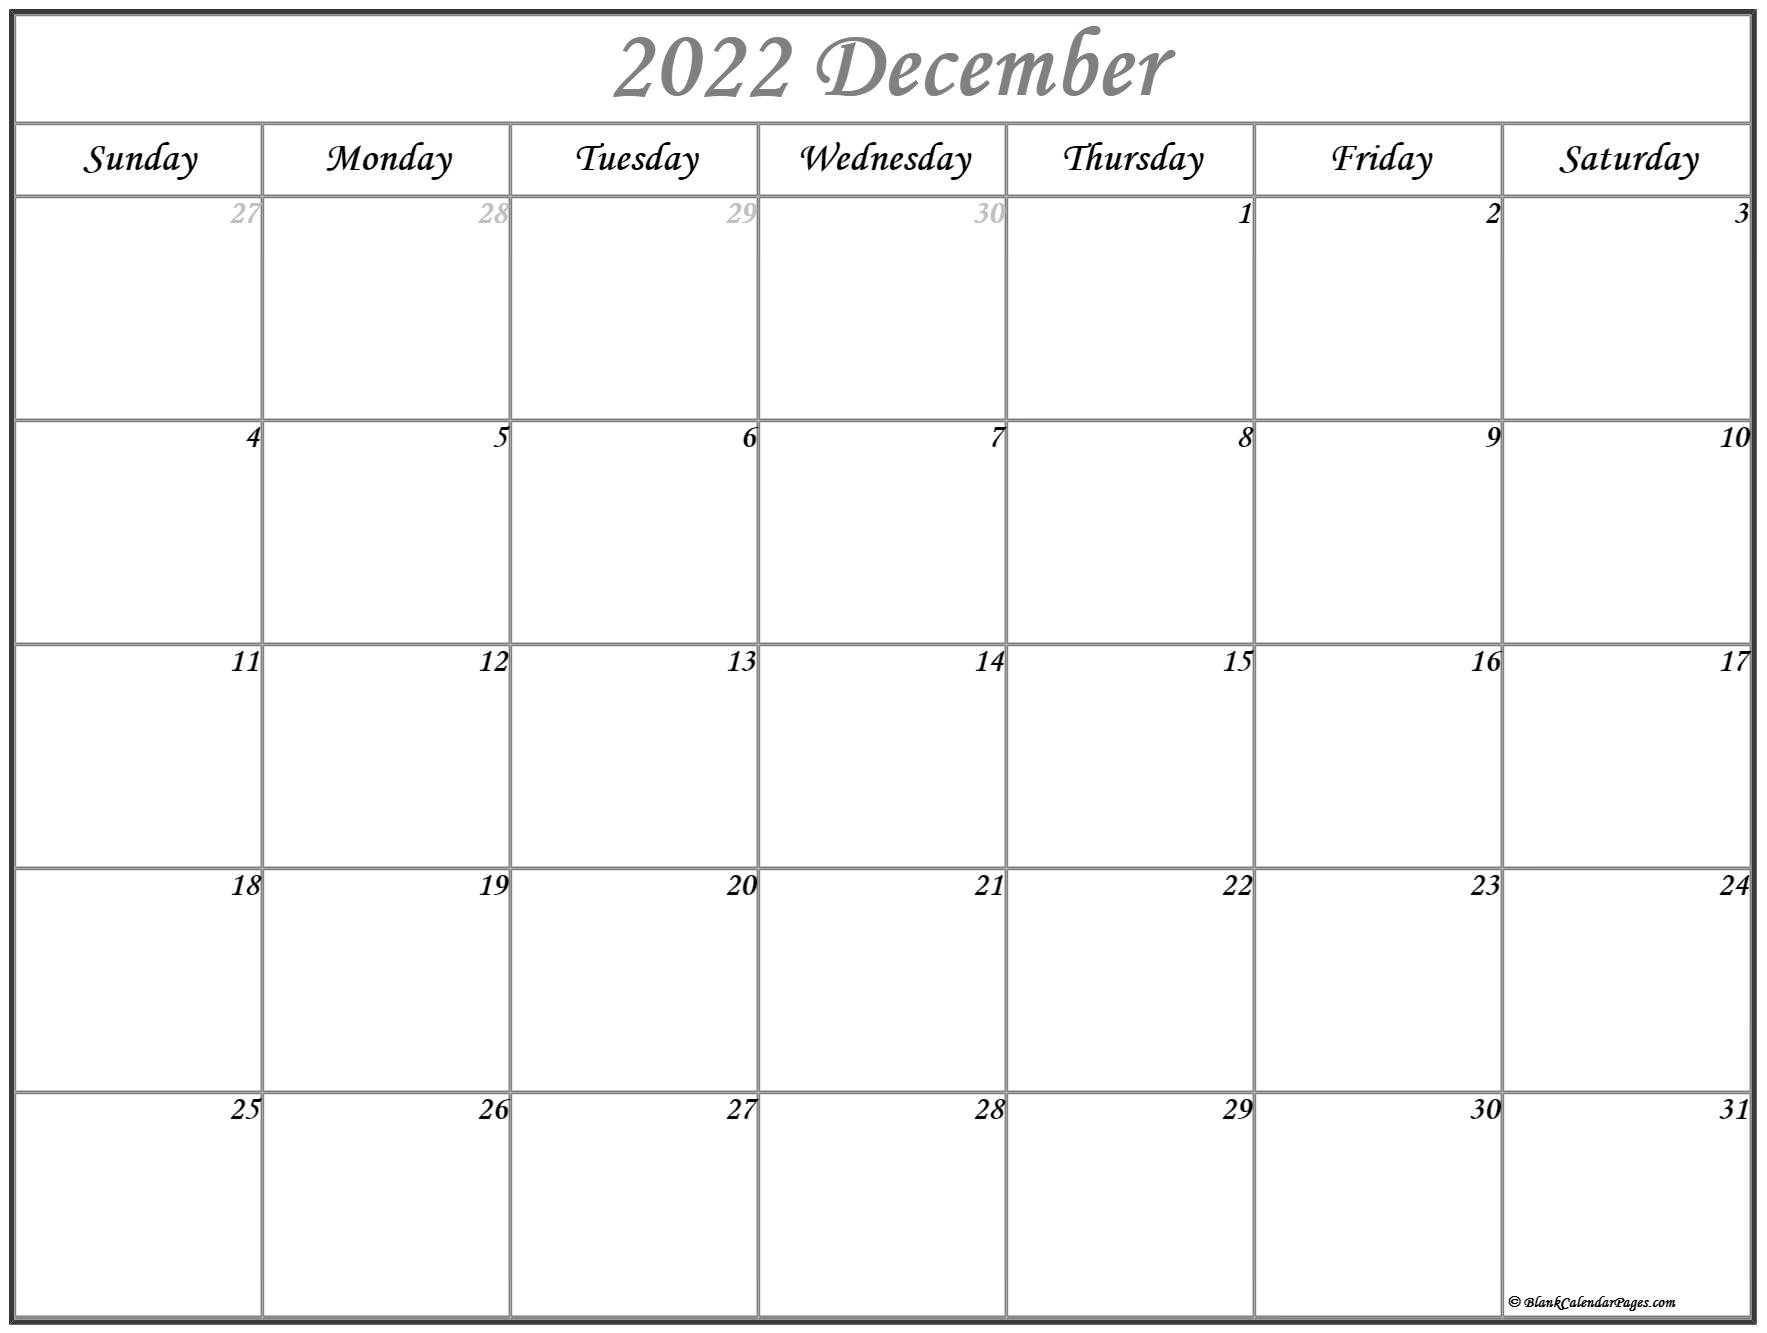 Jcua Monthly Calendar Dec 2022 - February Calendar 2022  December 2022 Through February 2022 Calendar